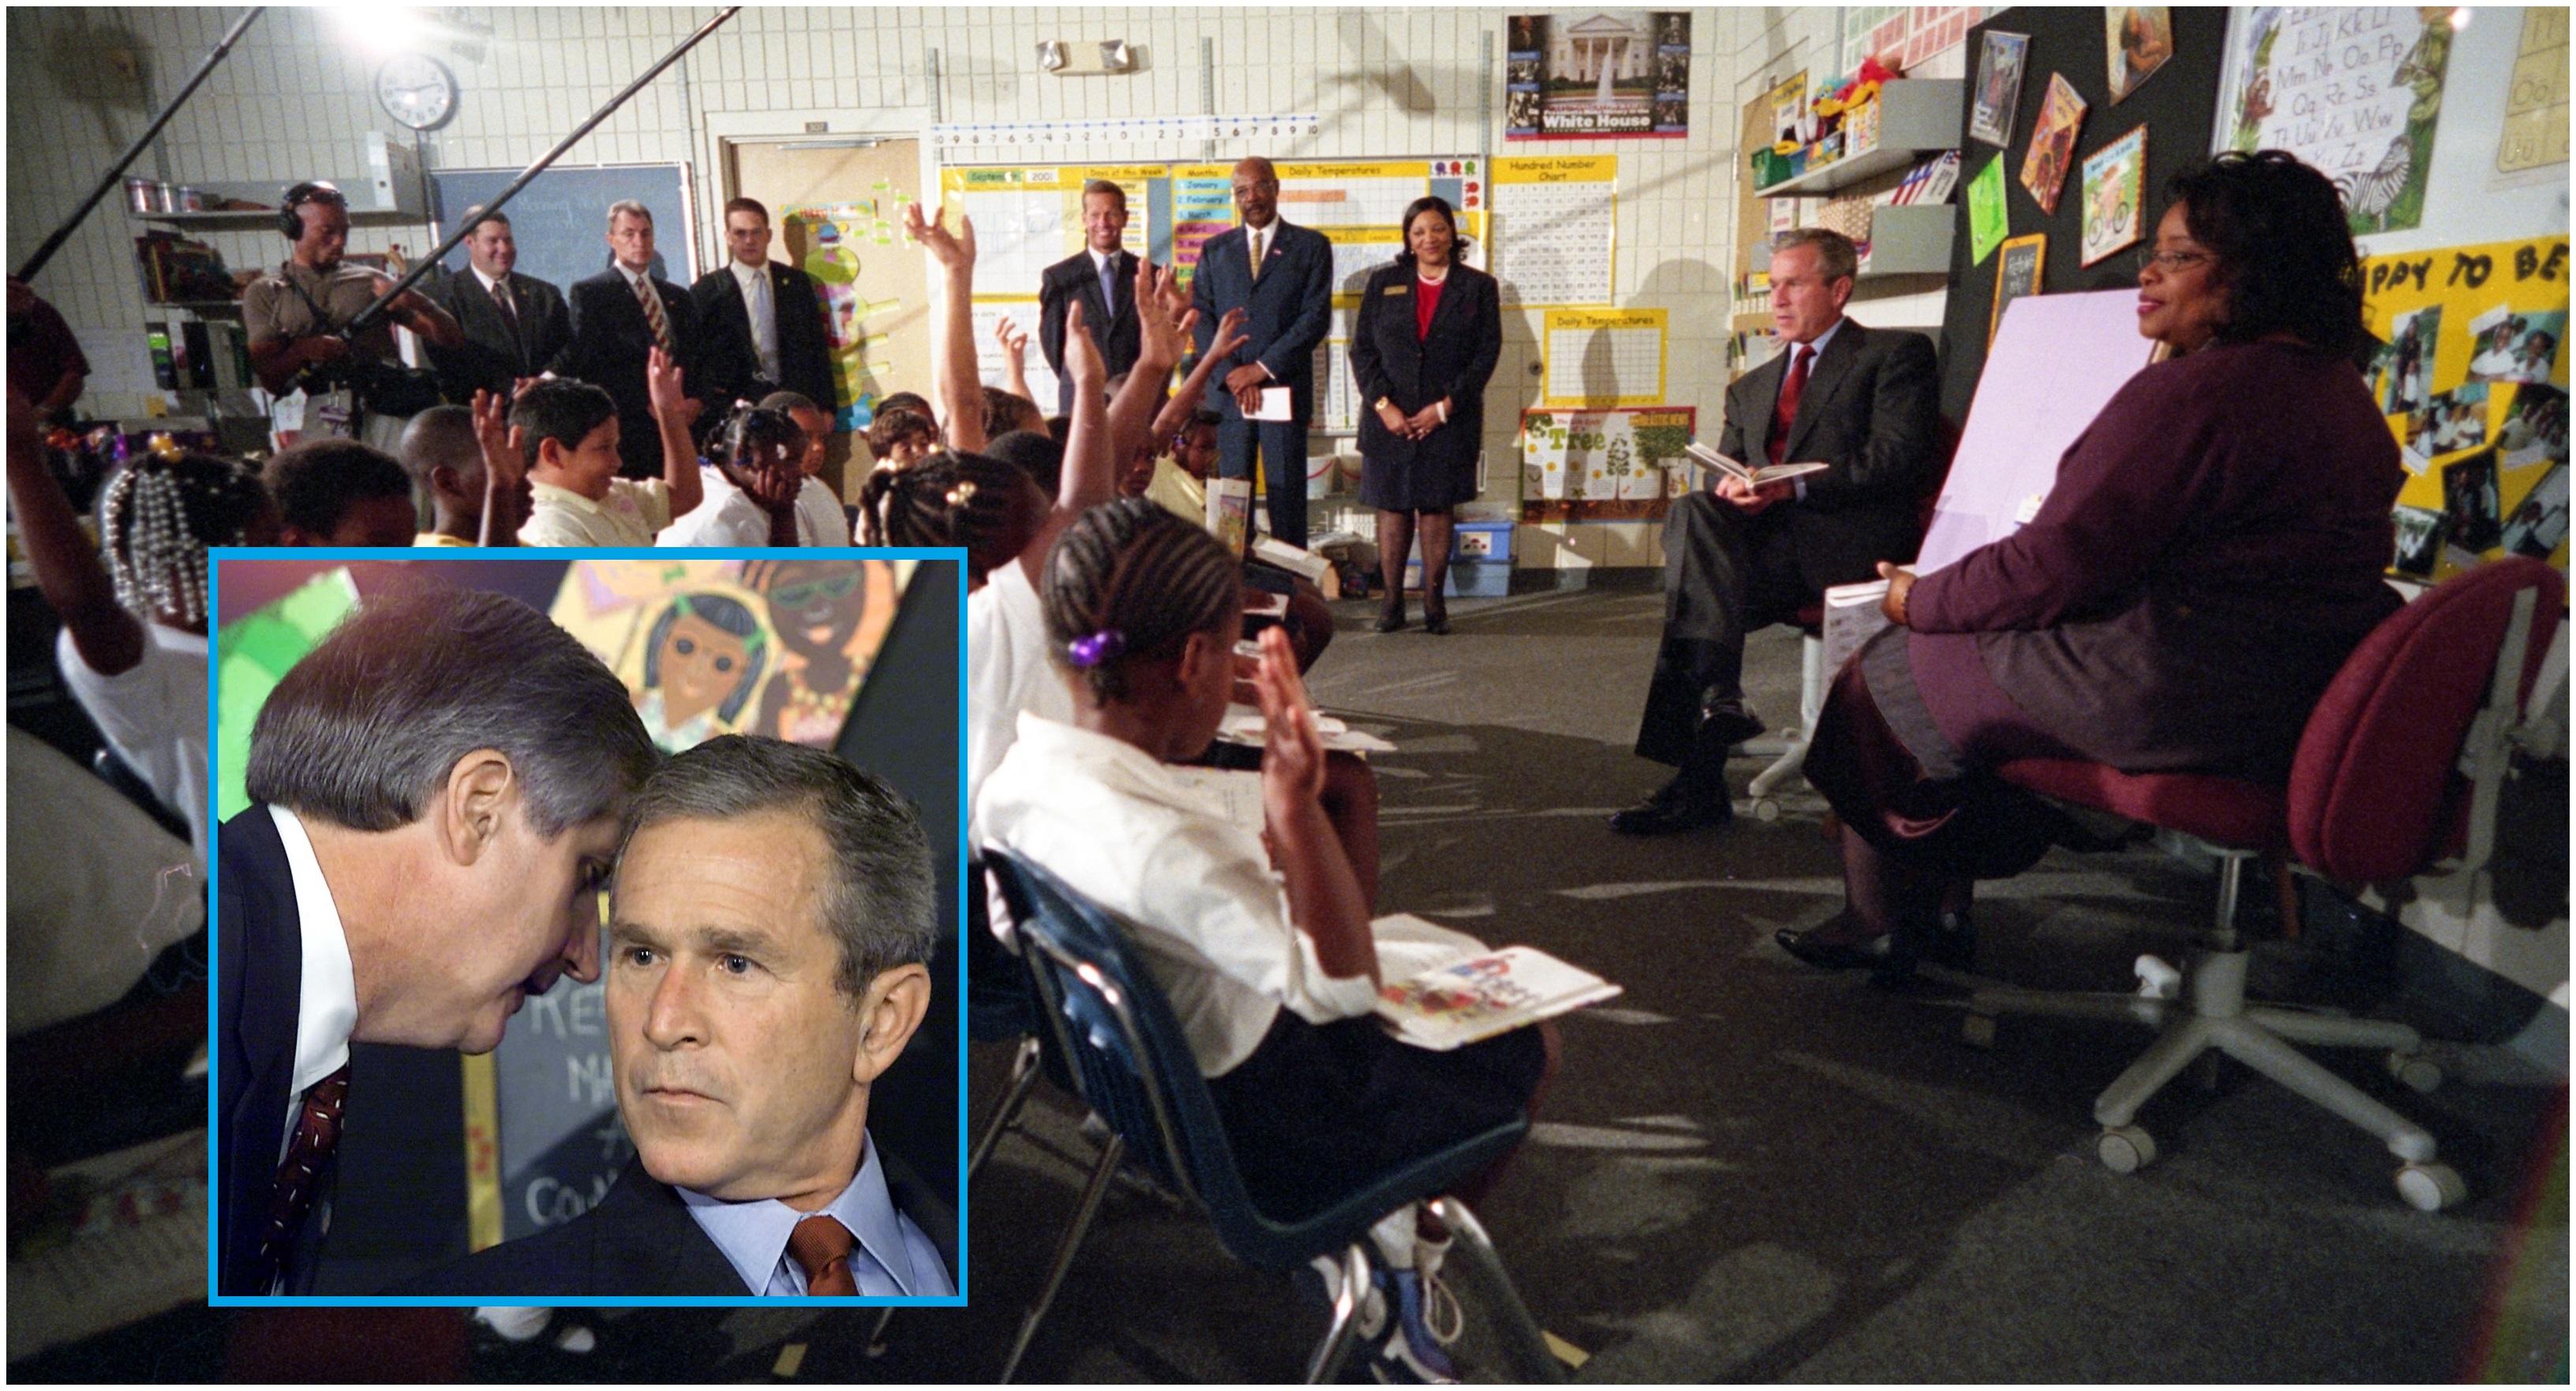 George W. Bush primește vestea atacurilor de la 11 septembrie 2001 în timpul unei lecții la o școală din Florida